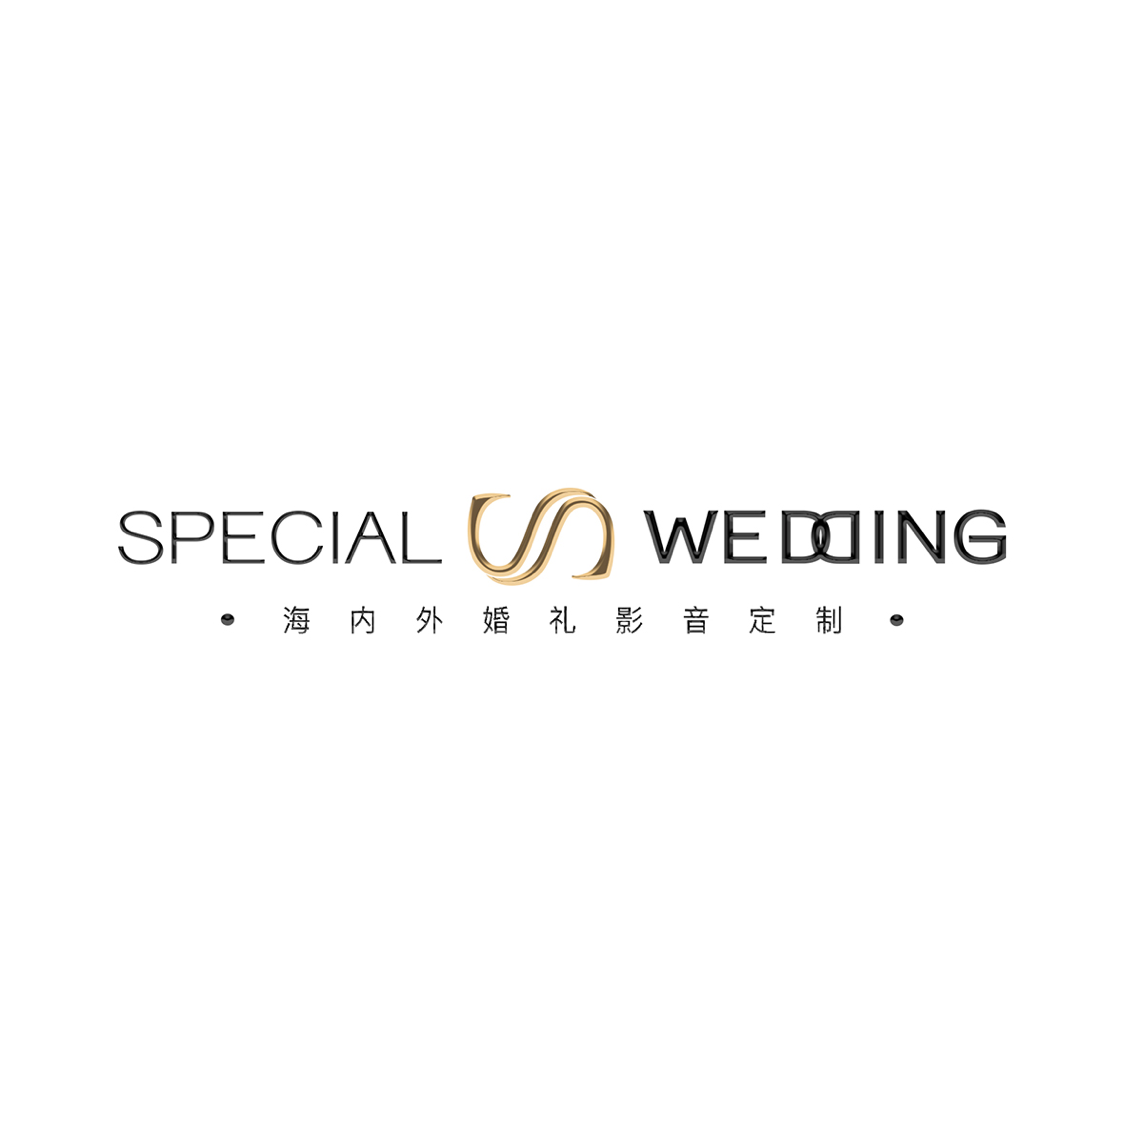 SPECIAL WEDDING